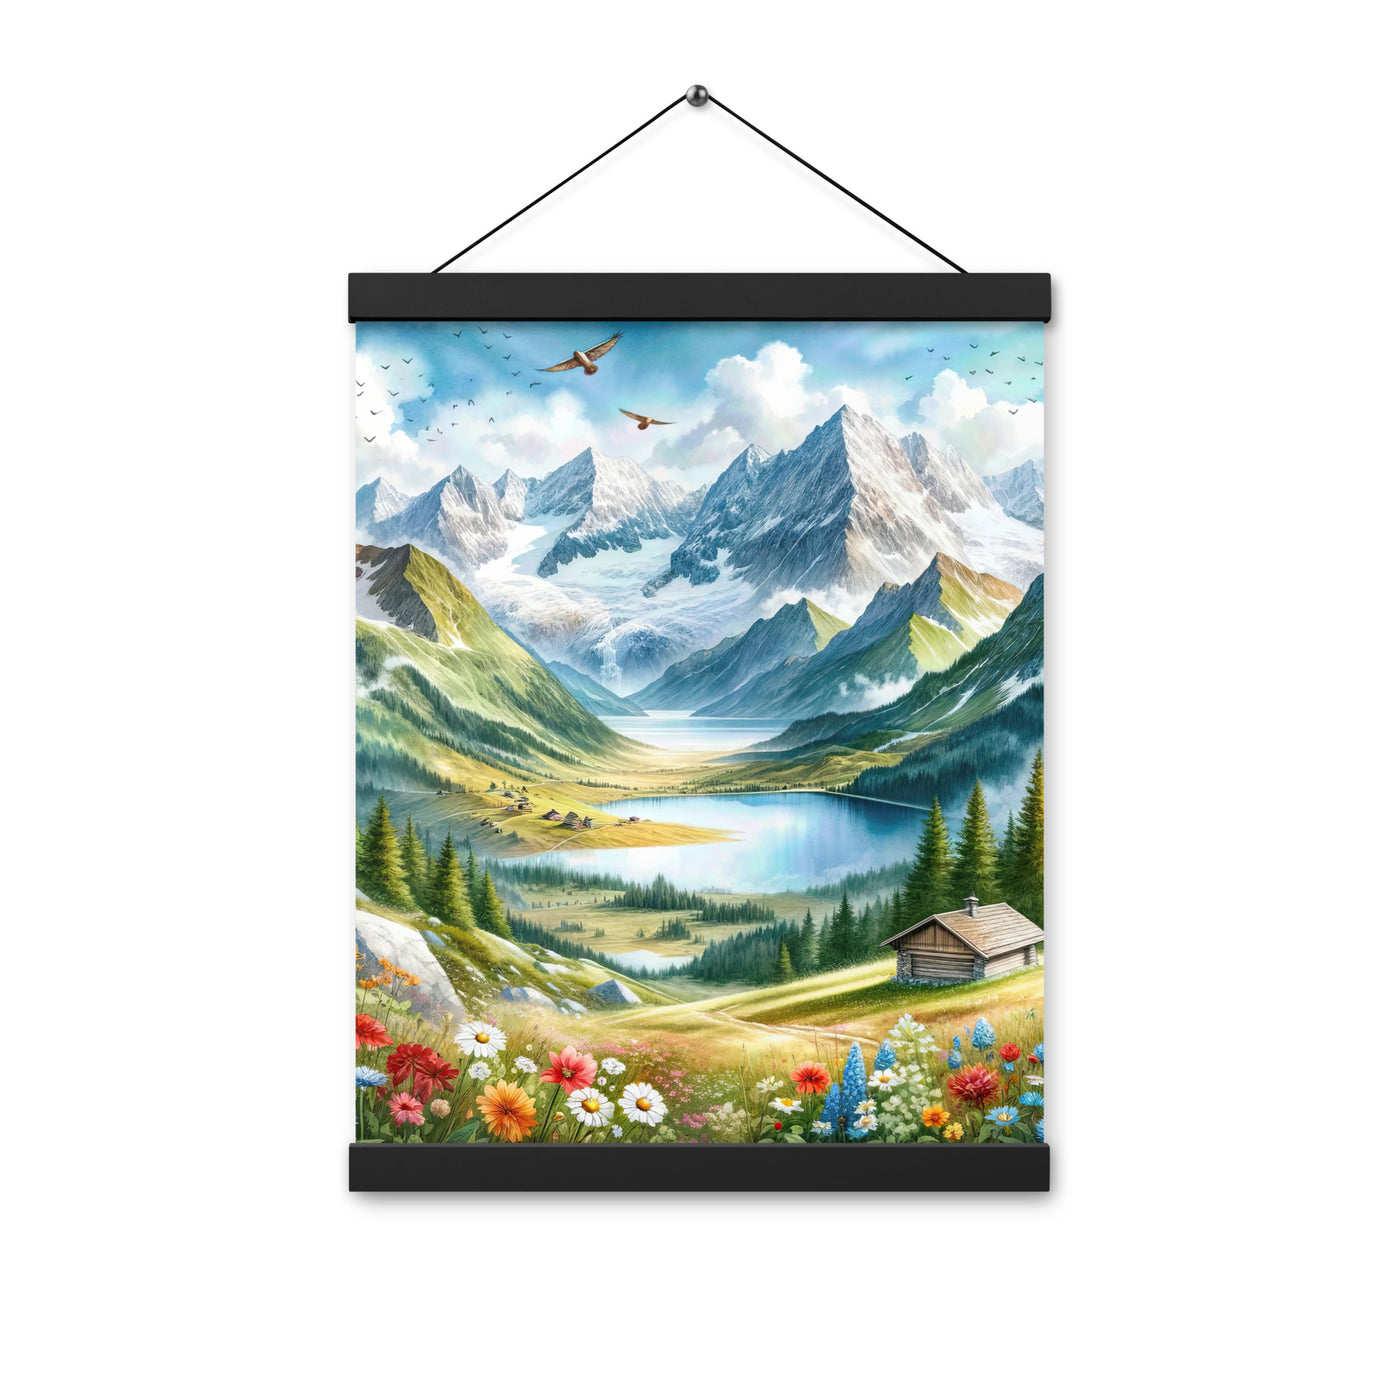 Quadratisches Aquarell der Alpen, Berge mit schneebedeckten Spitzen - Premium Poster mit Aufhängung berge xxx yyy zzz 30.5 x 40.6 cm